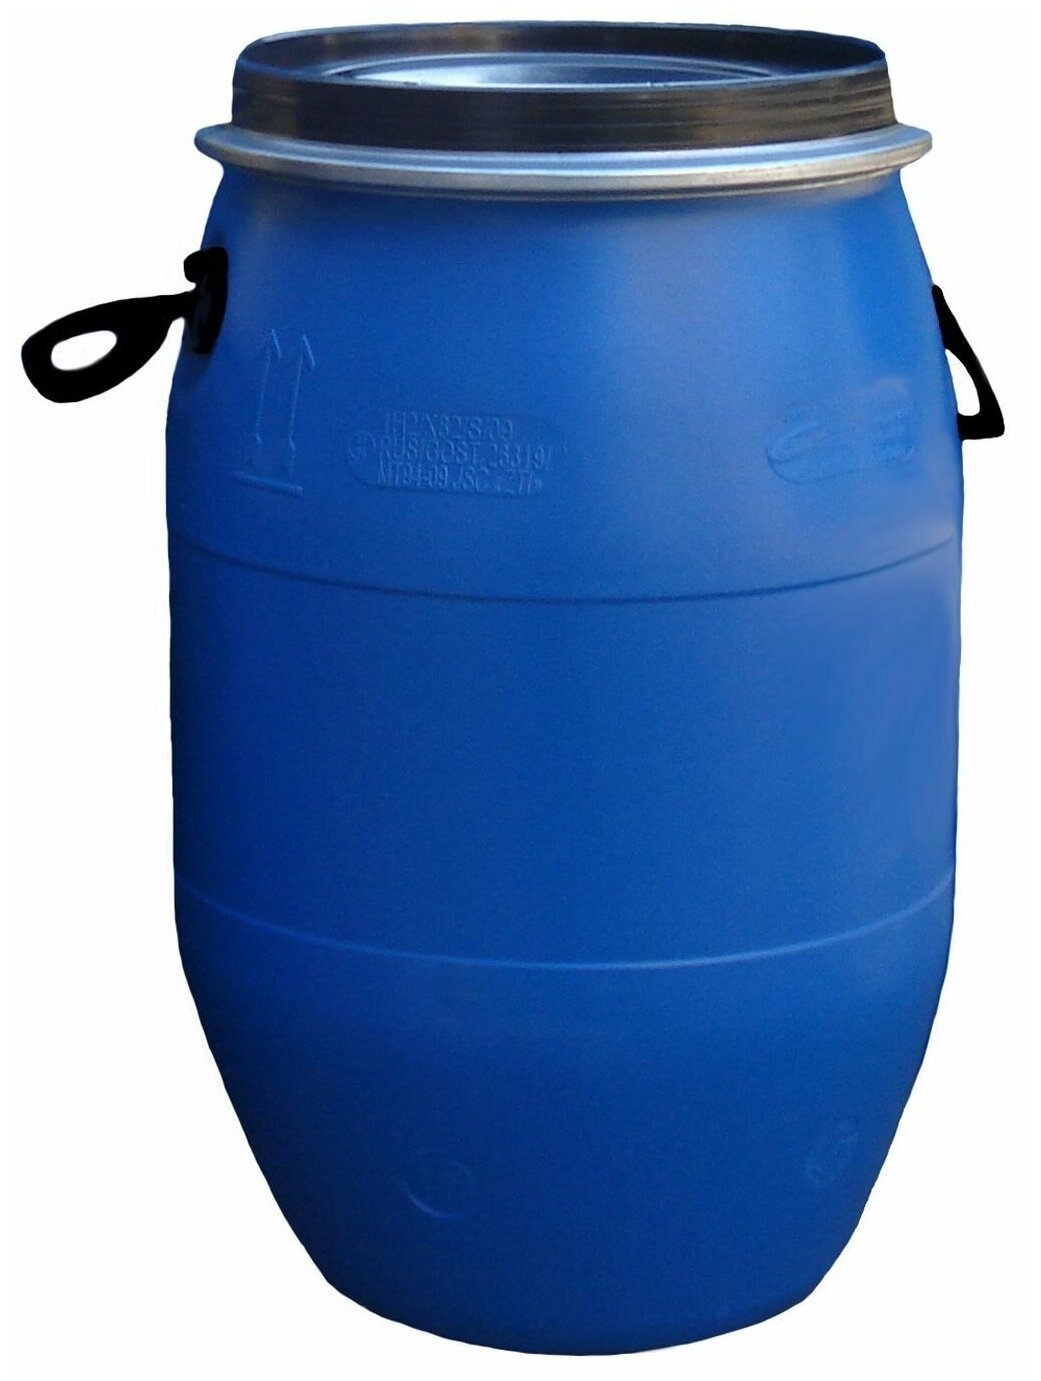 Синяя бочка-бак емкостью 65 литров, для засолки, квашения, хранения воды, растительных масел, вина, браги и др. пищевых продуктов